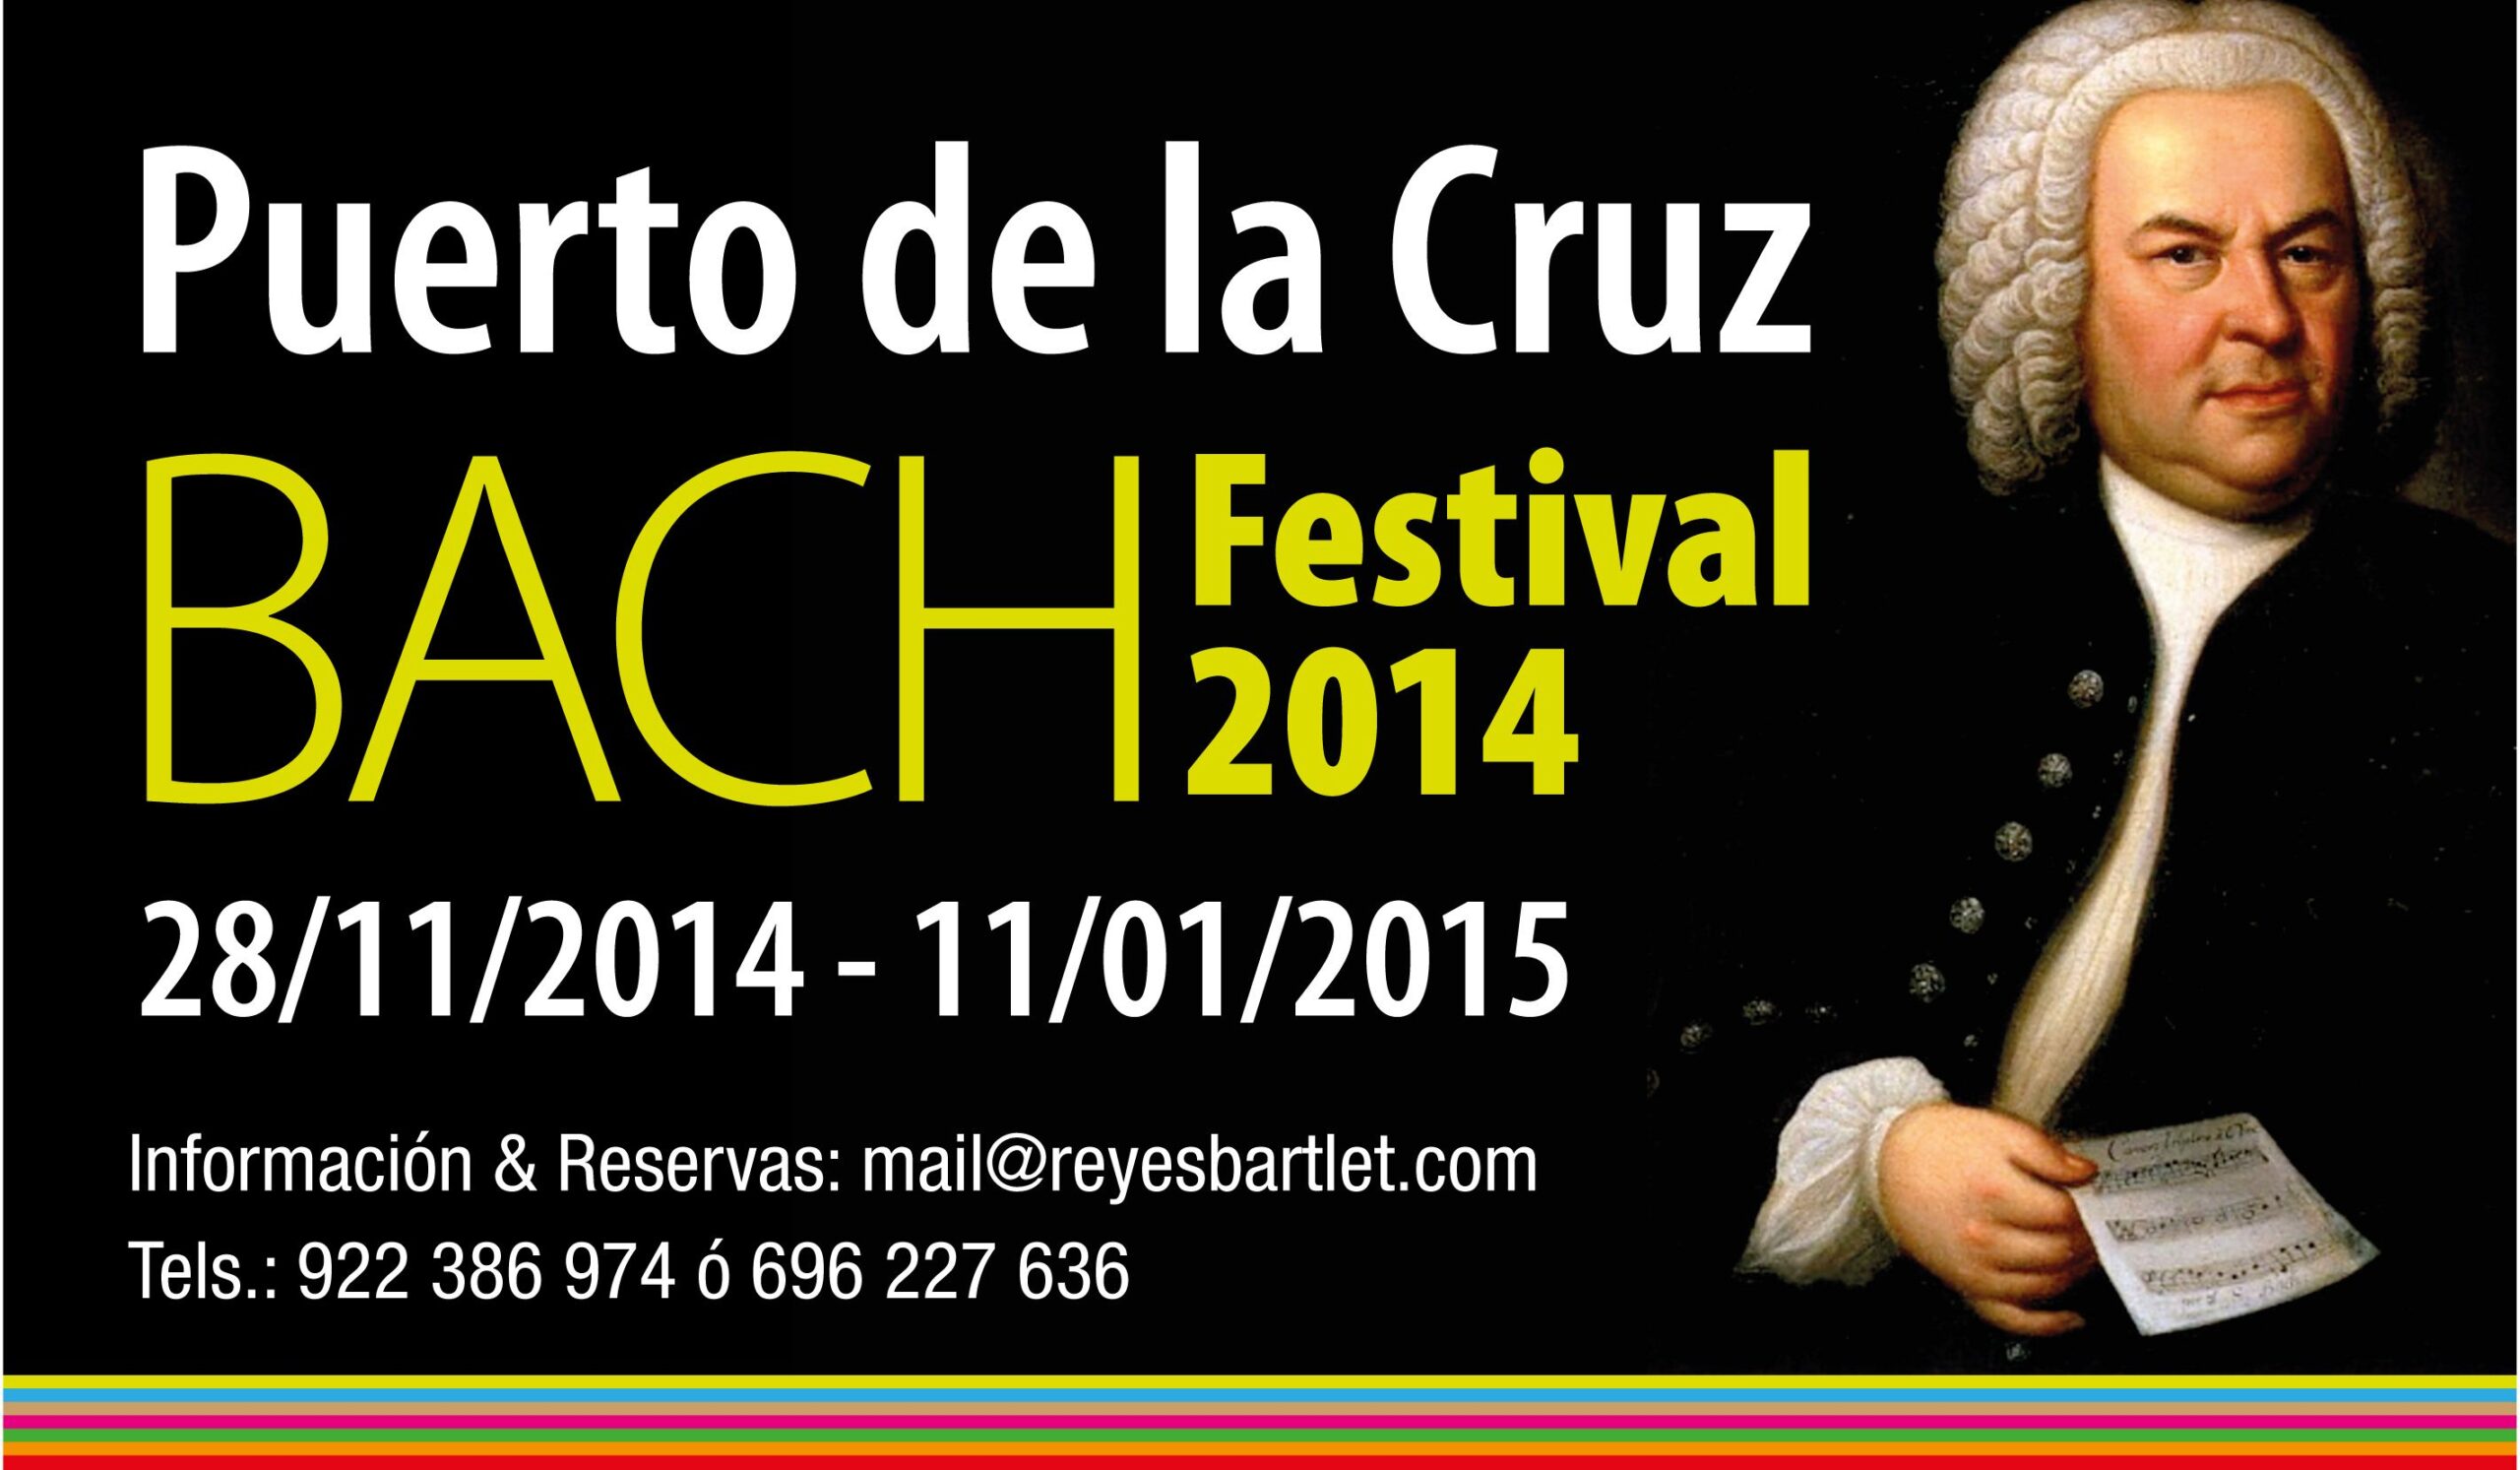 Puerto de la Cruz Bach Festival 2014